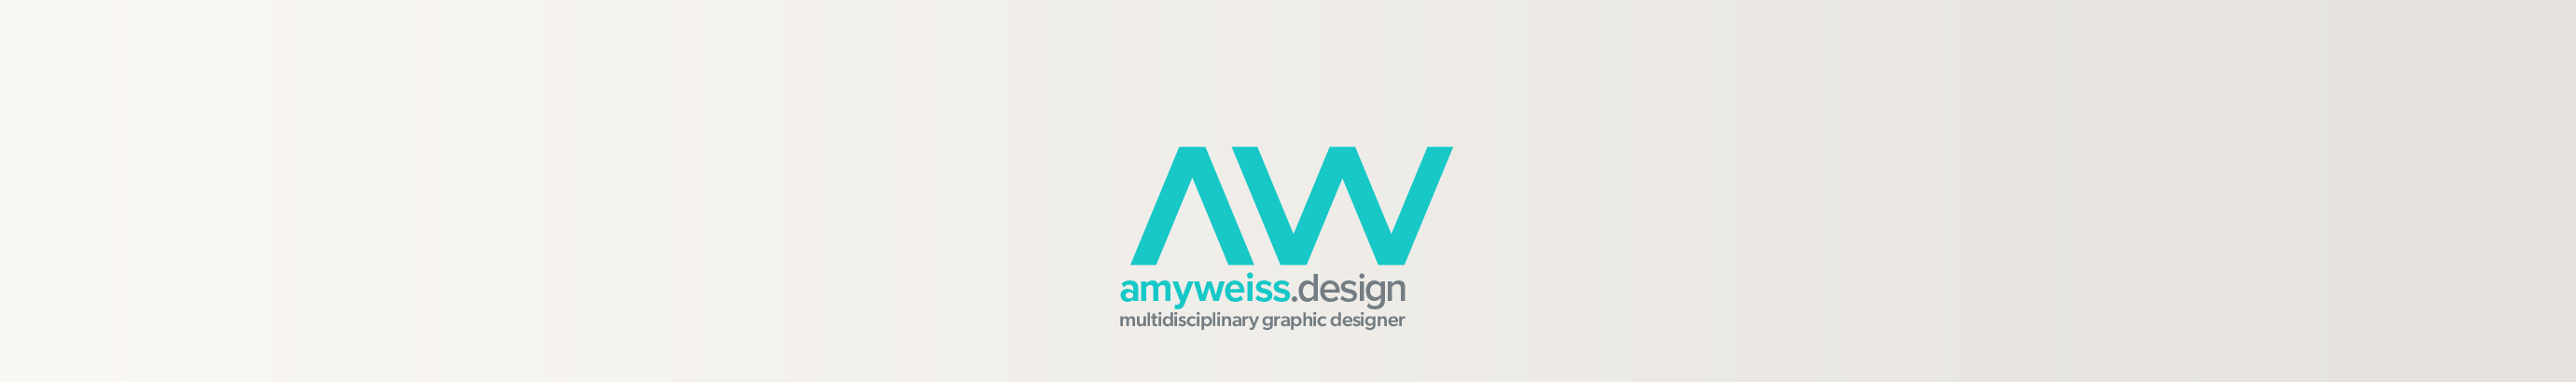 Baner profilu użytkownika Amy Weiss